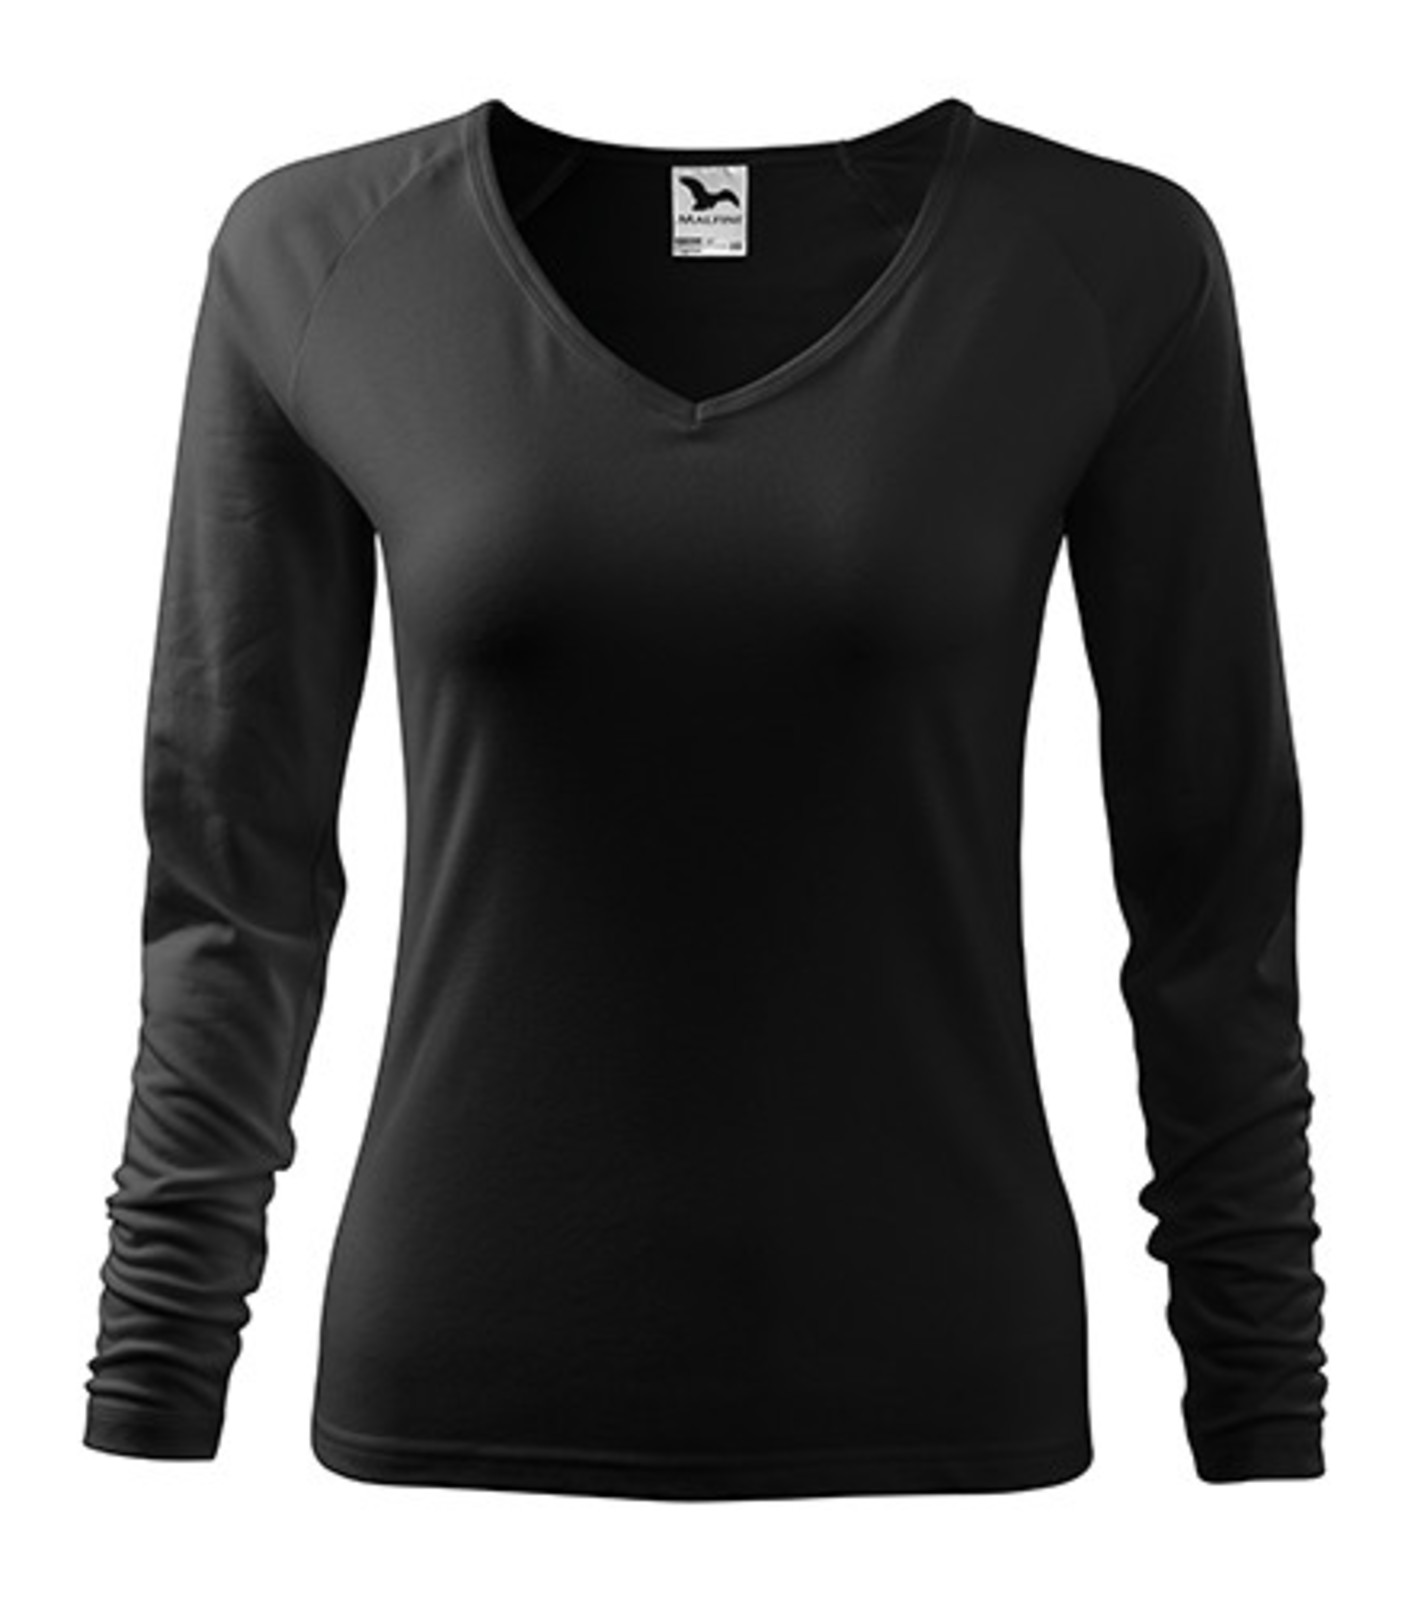 Dámske tričko s dlhým rukávom Adler Elegance 127 - veľkosť: L, farba: čierna